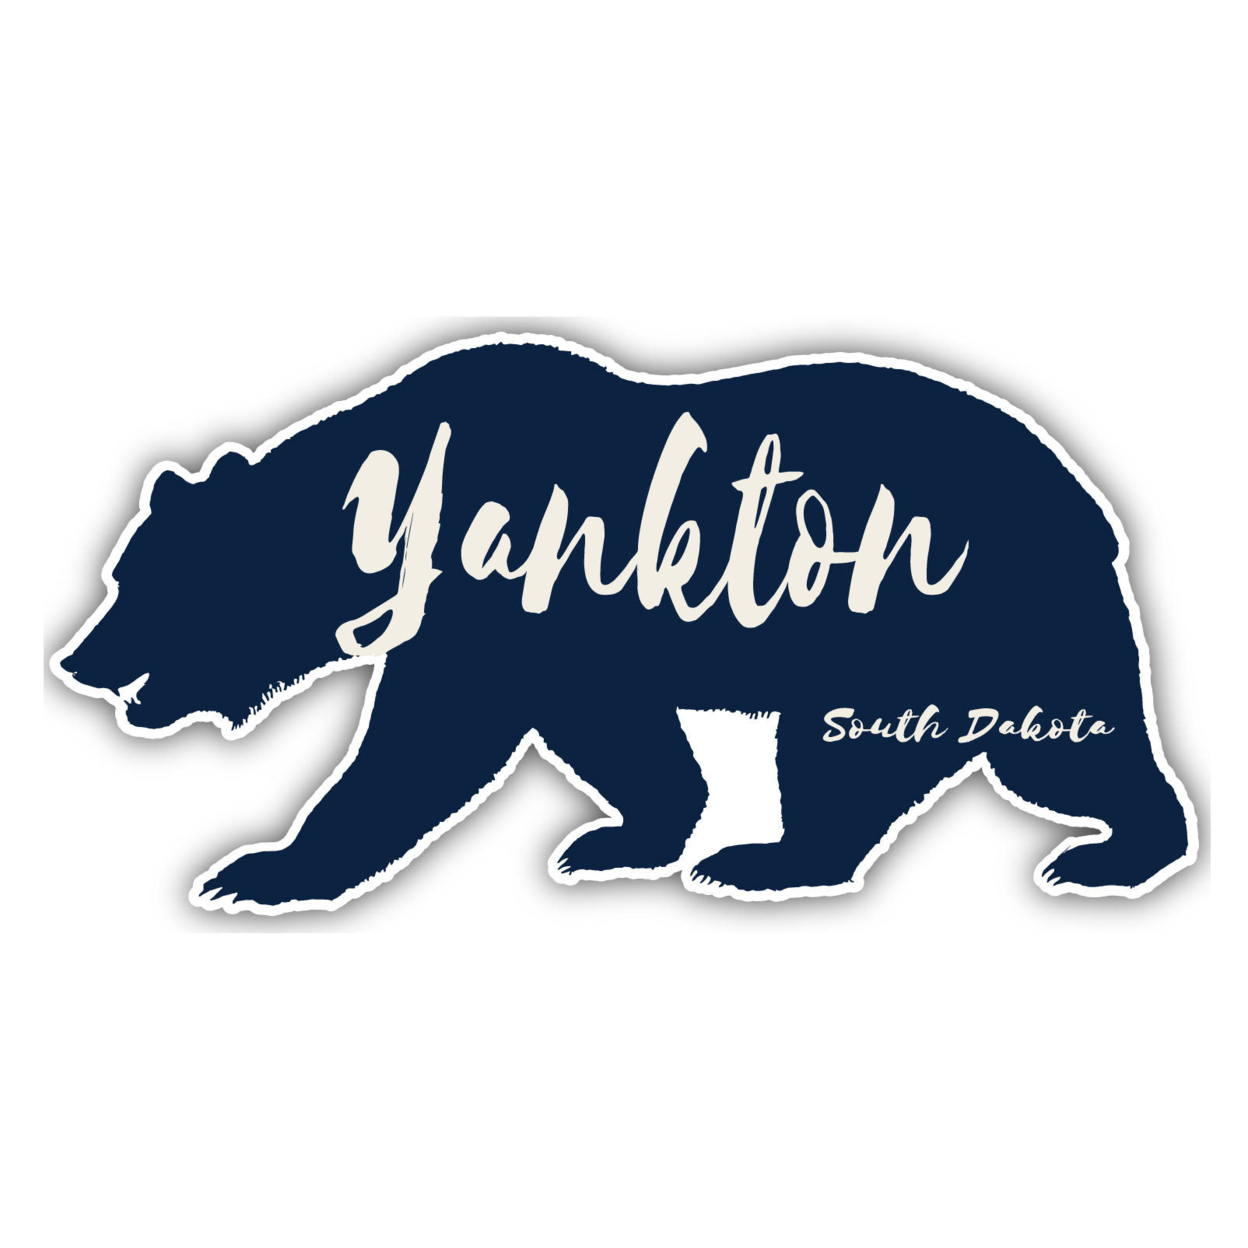 Yankton South Dakota Souvenir Decorative Stickers (Choose Theme And Size) - Single Unit, 2-Inch, Bear